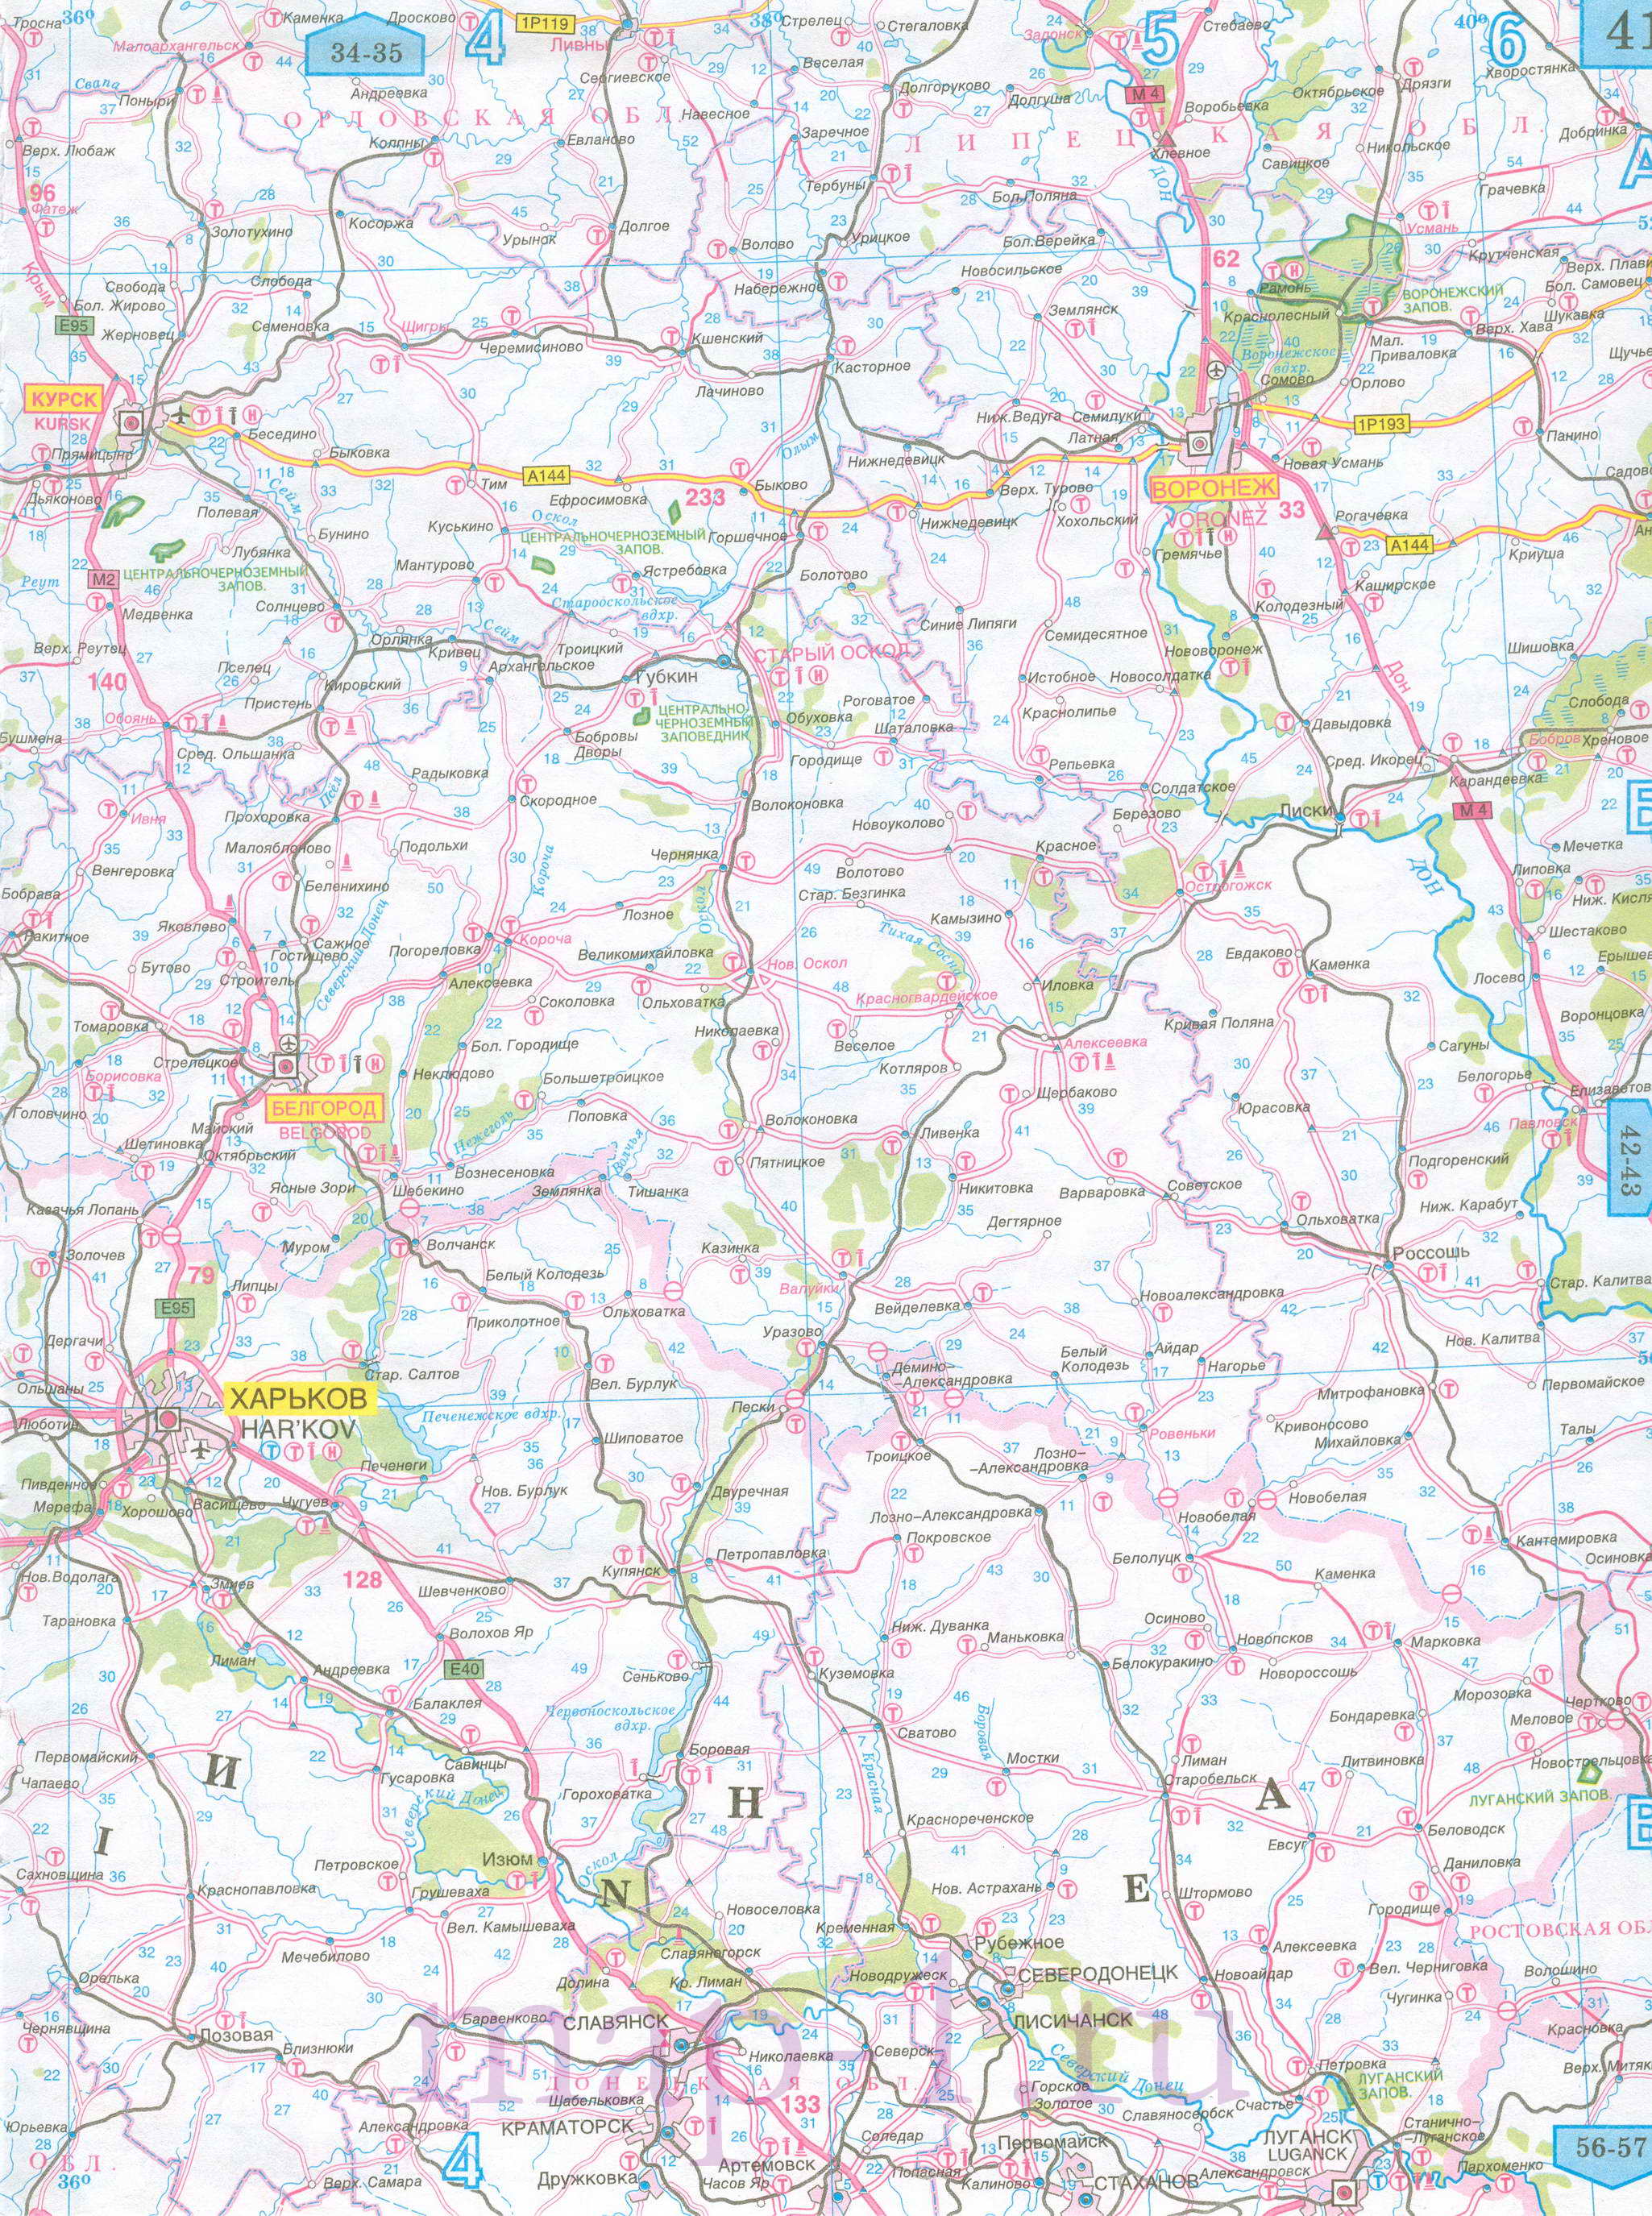 Карта Белгородской области автомобильная. Подробная карта дорог - Белгородская область, масштаб 1см:15км, B0 - 